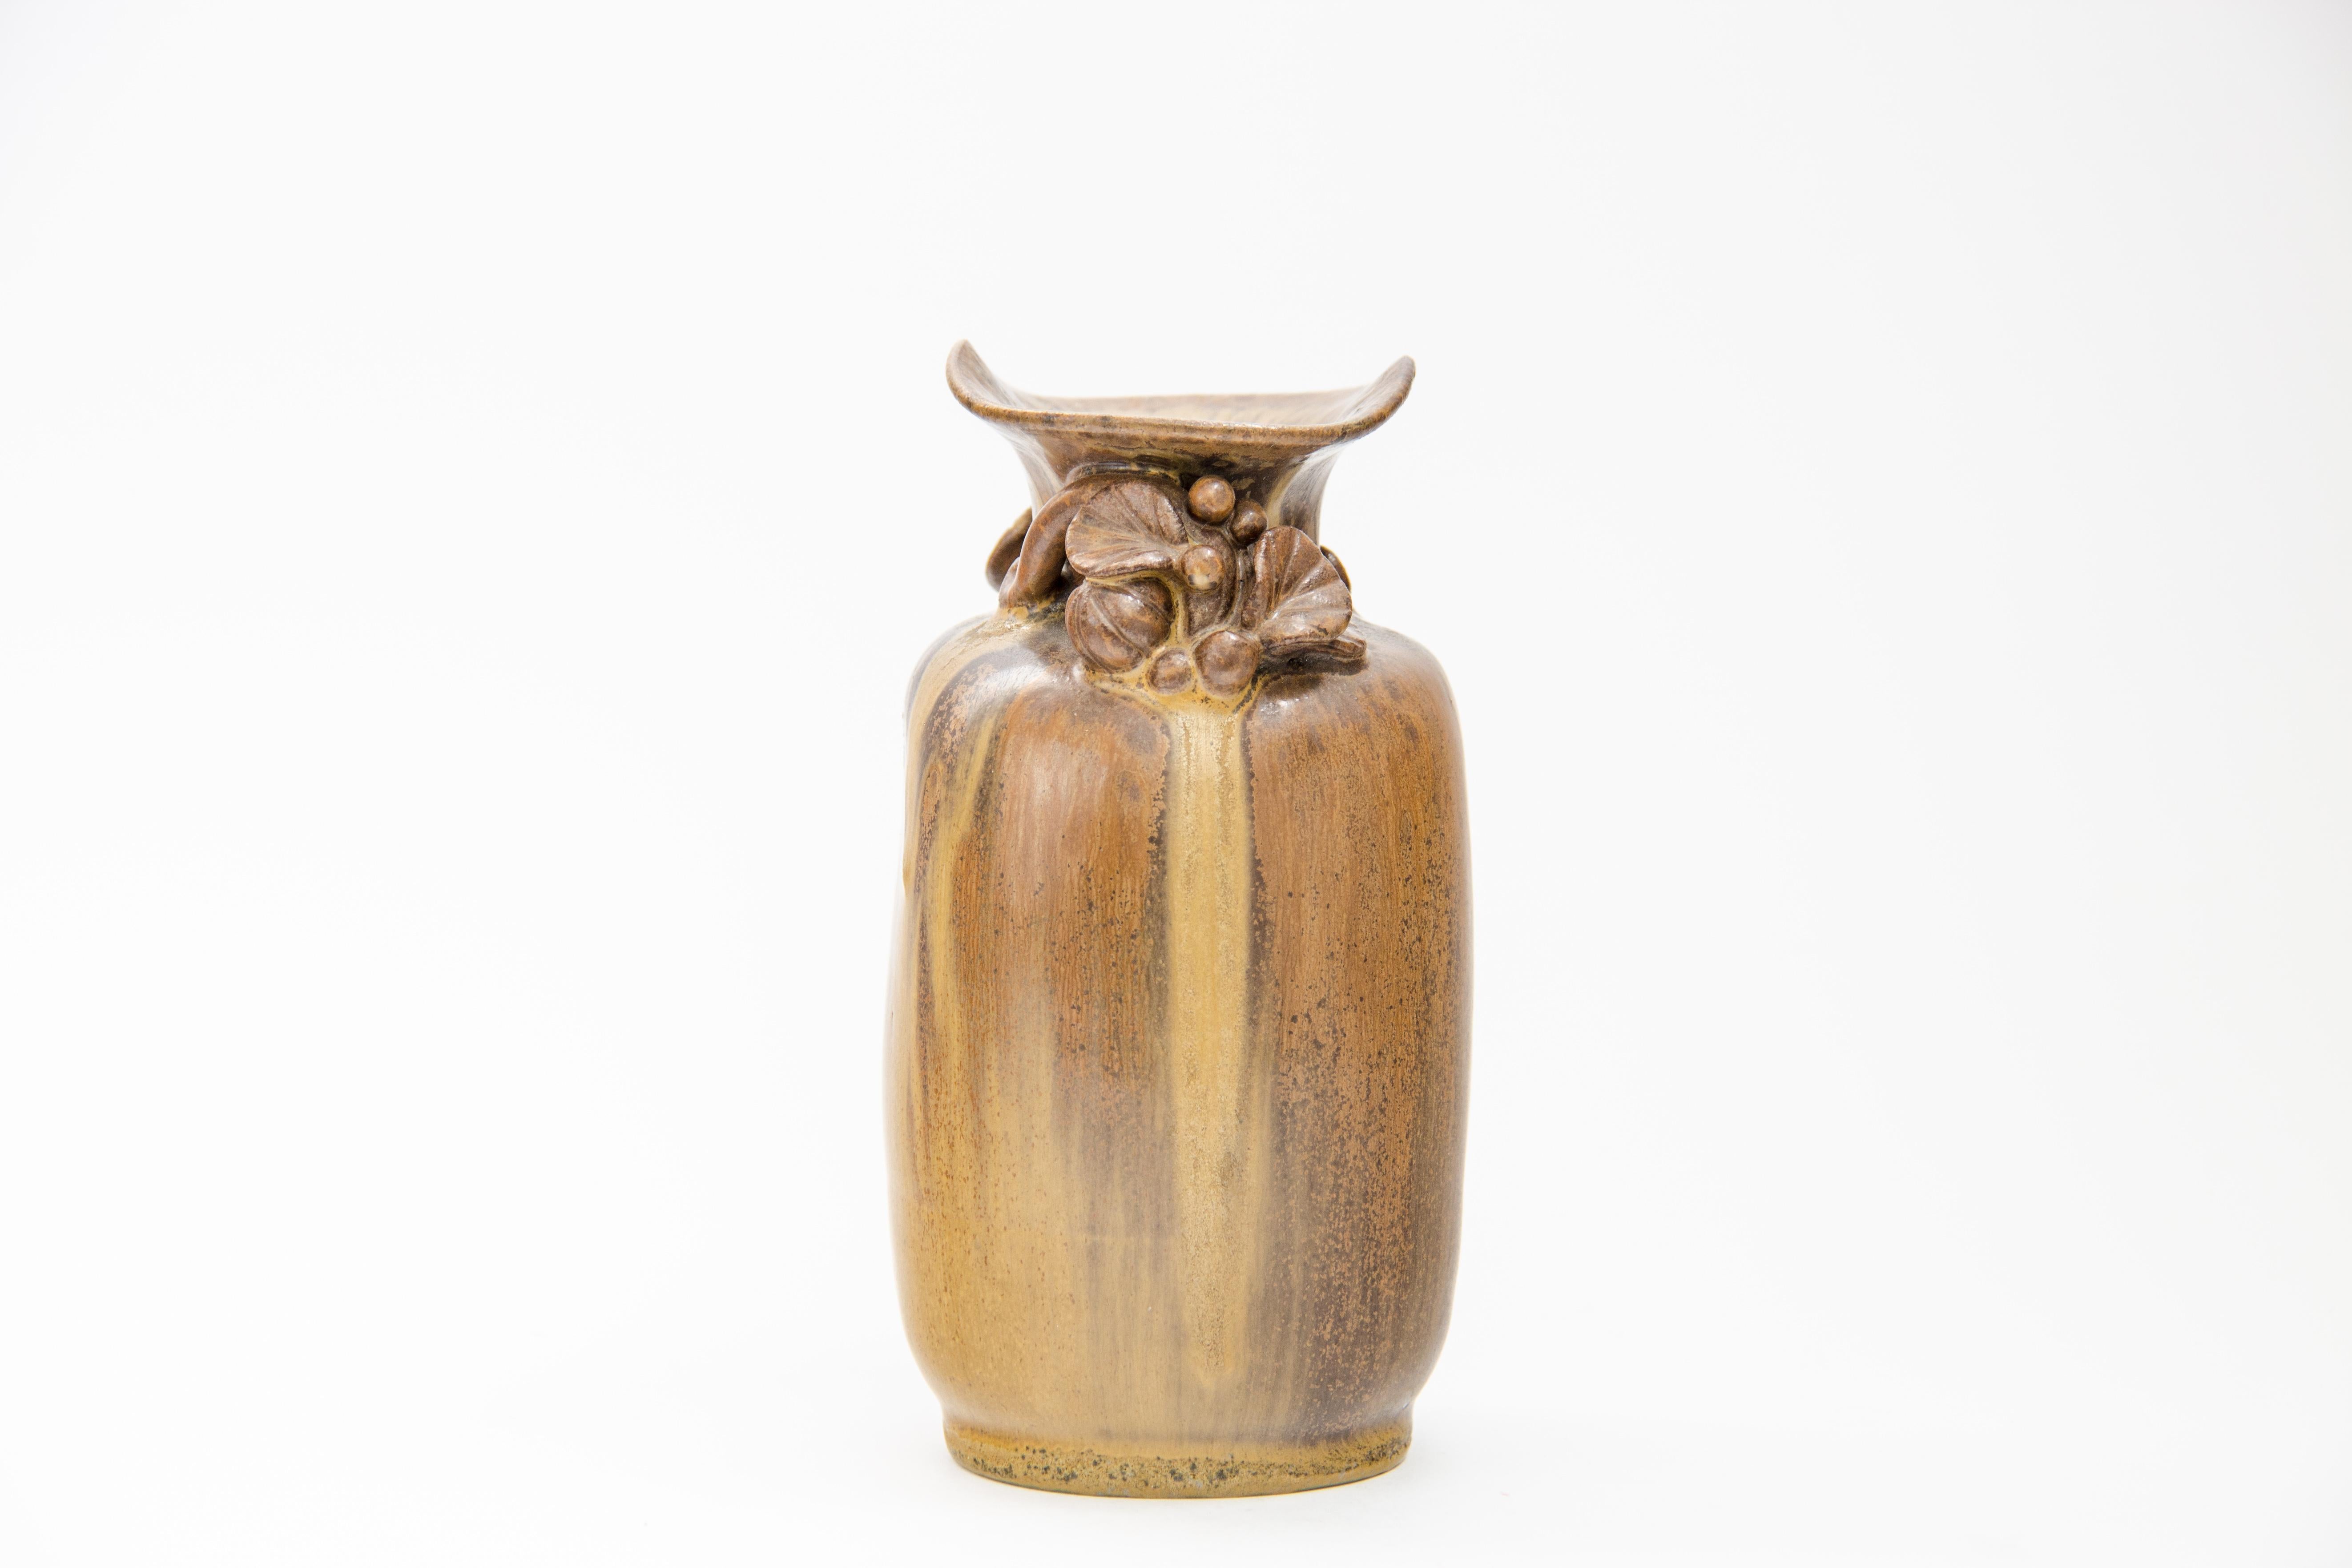 Schöne Vase mit applizierten Blättern von Arne Bang
1930s
